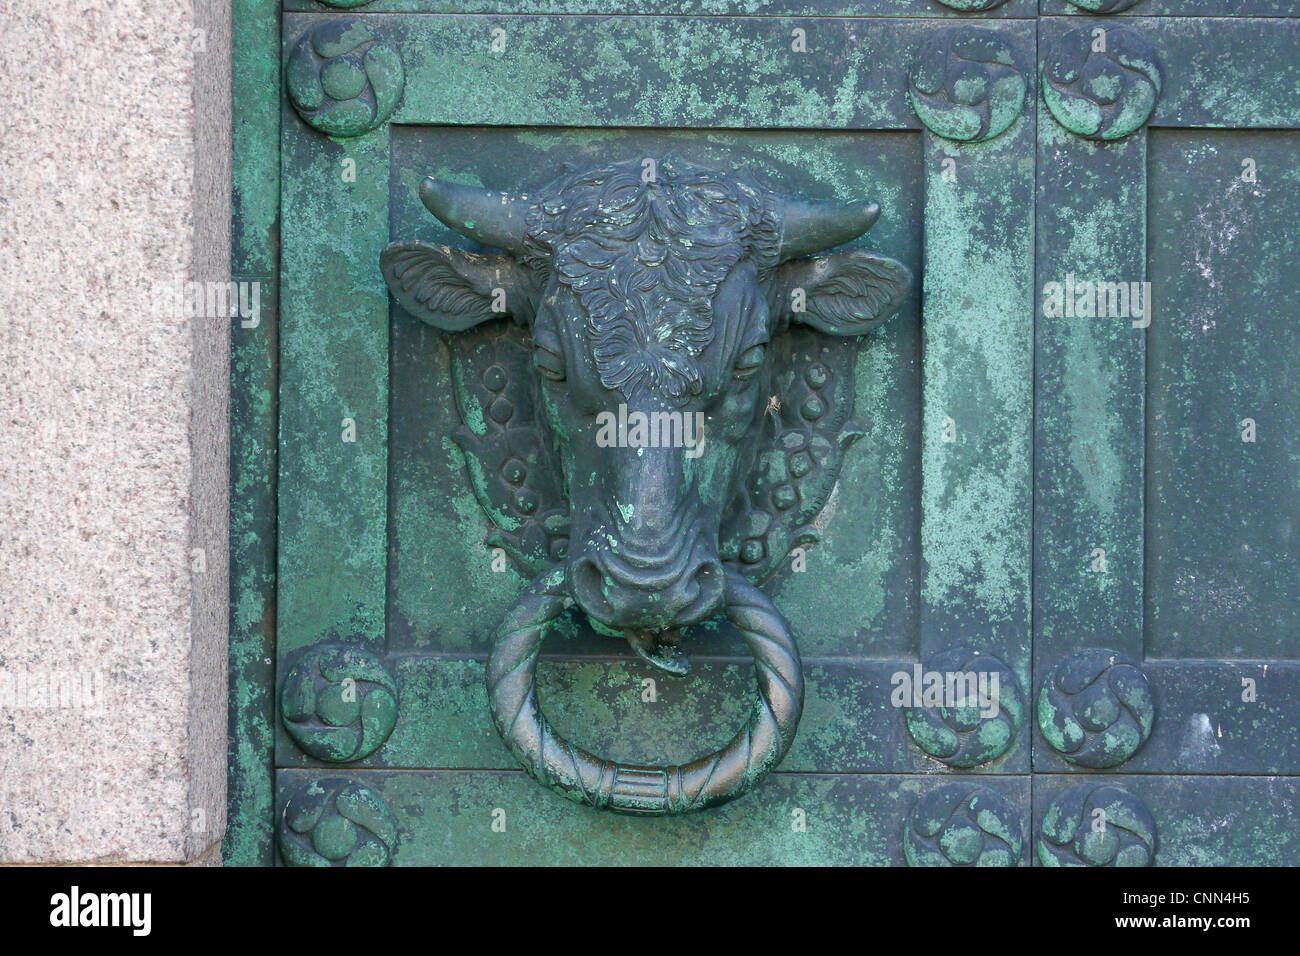 Testa di toro dettaglio in bronzo della Porta della cattedrale storica città Nostra Signora Maria Cattedrale Vor Frue Maria Domkirke Ribe dello Jutland in Danimarca può Foto Stock